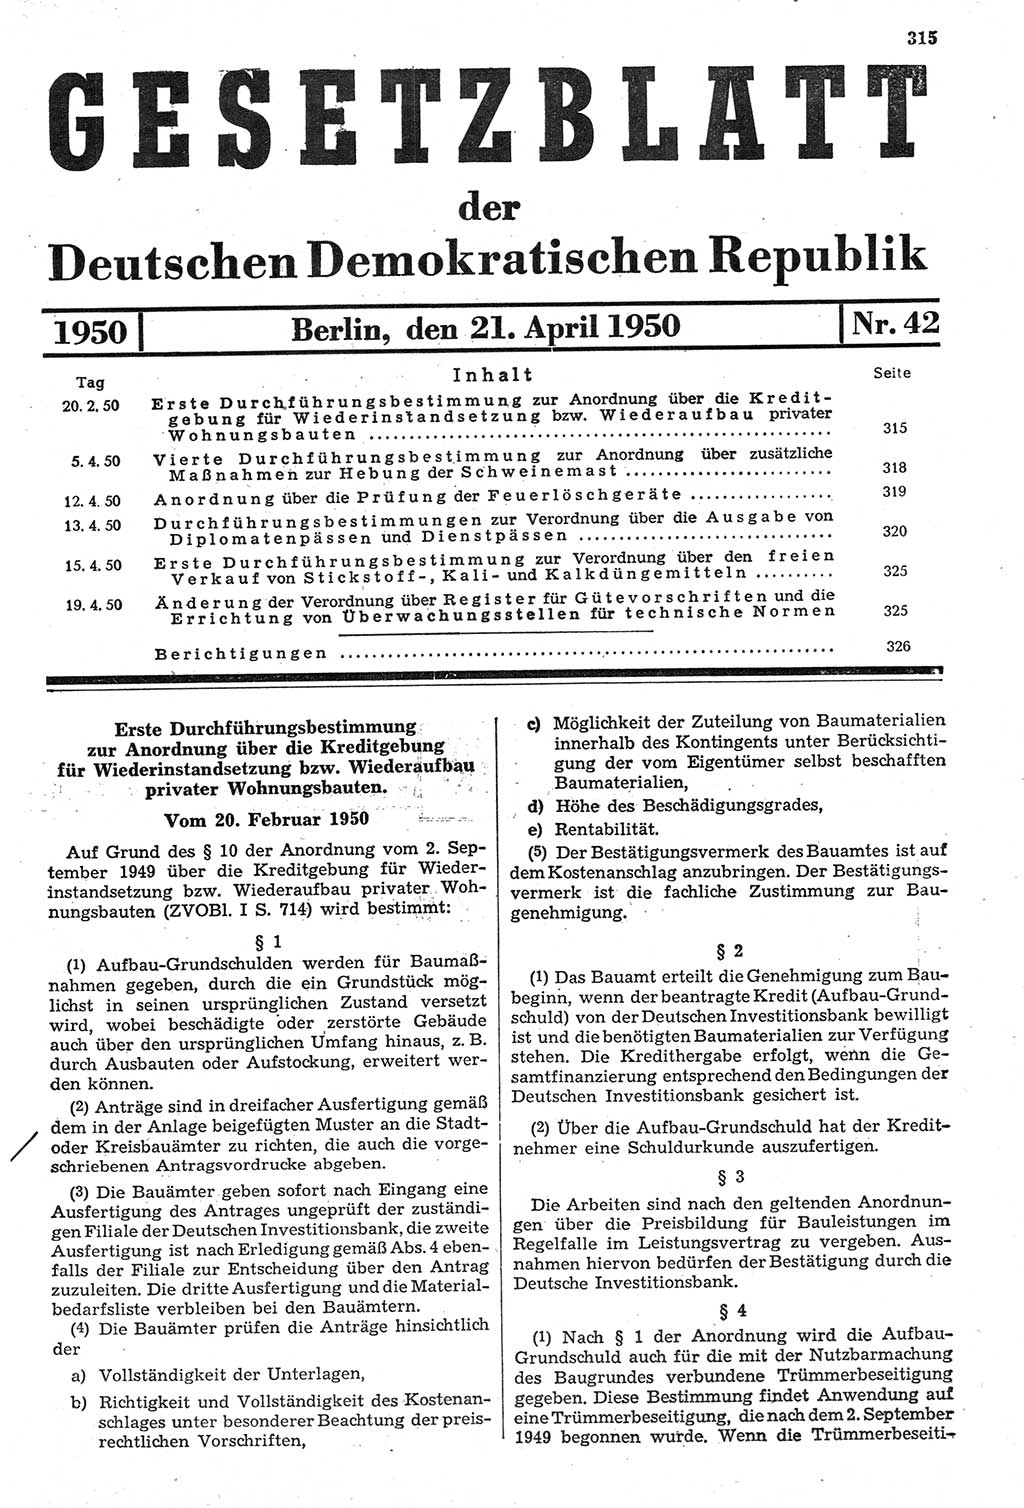 Gesetzblatt (GBl.) der Deutschen Demokratischen Republik (DDR) 1950, Seite 315 (GBl. DDR 1950, S. 315)